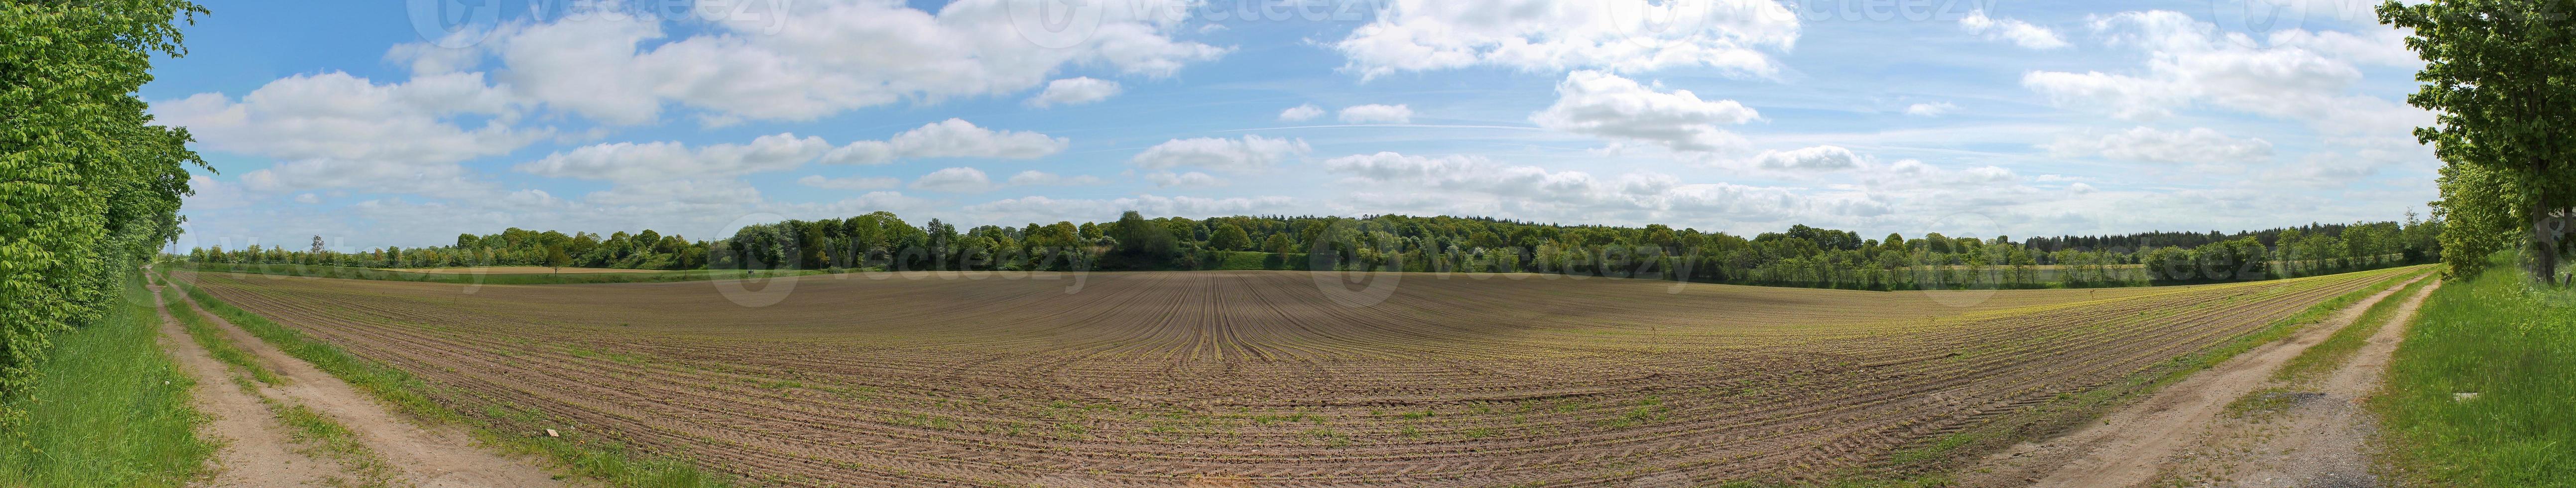 bellissimo panorama ad alta risoluzione di un paesaggio di un paese dell'Europa settentrionale con campi ed erba verde foto